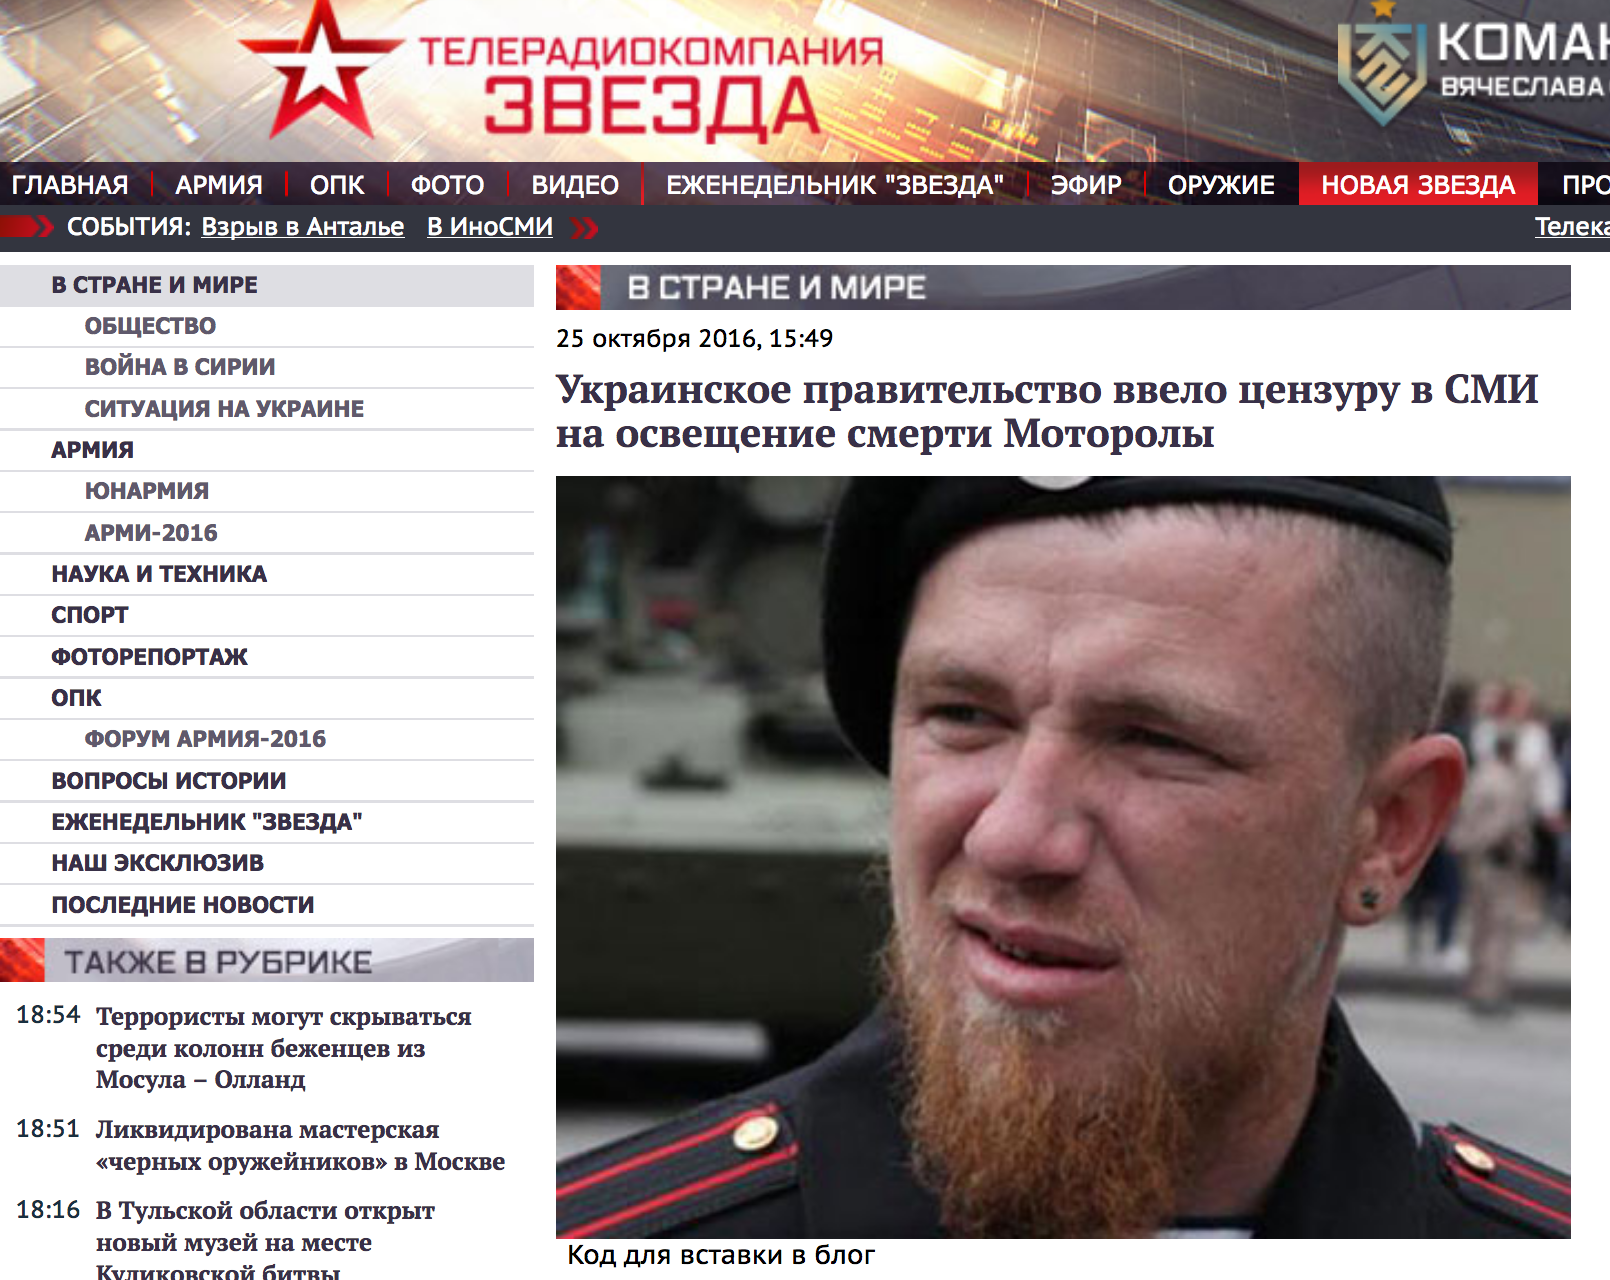 Website screenshot Zvezda